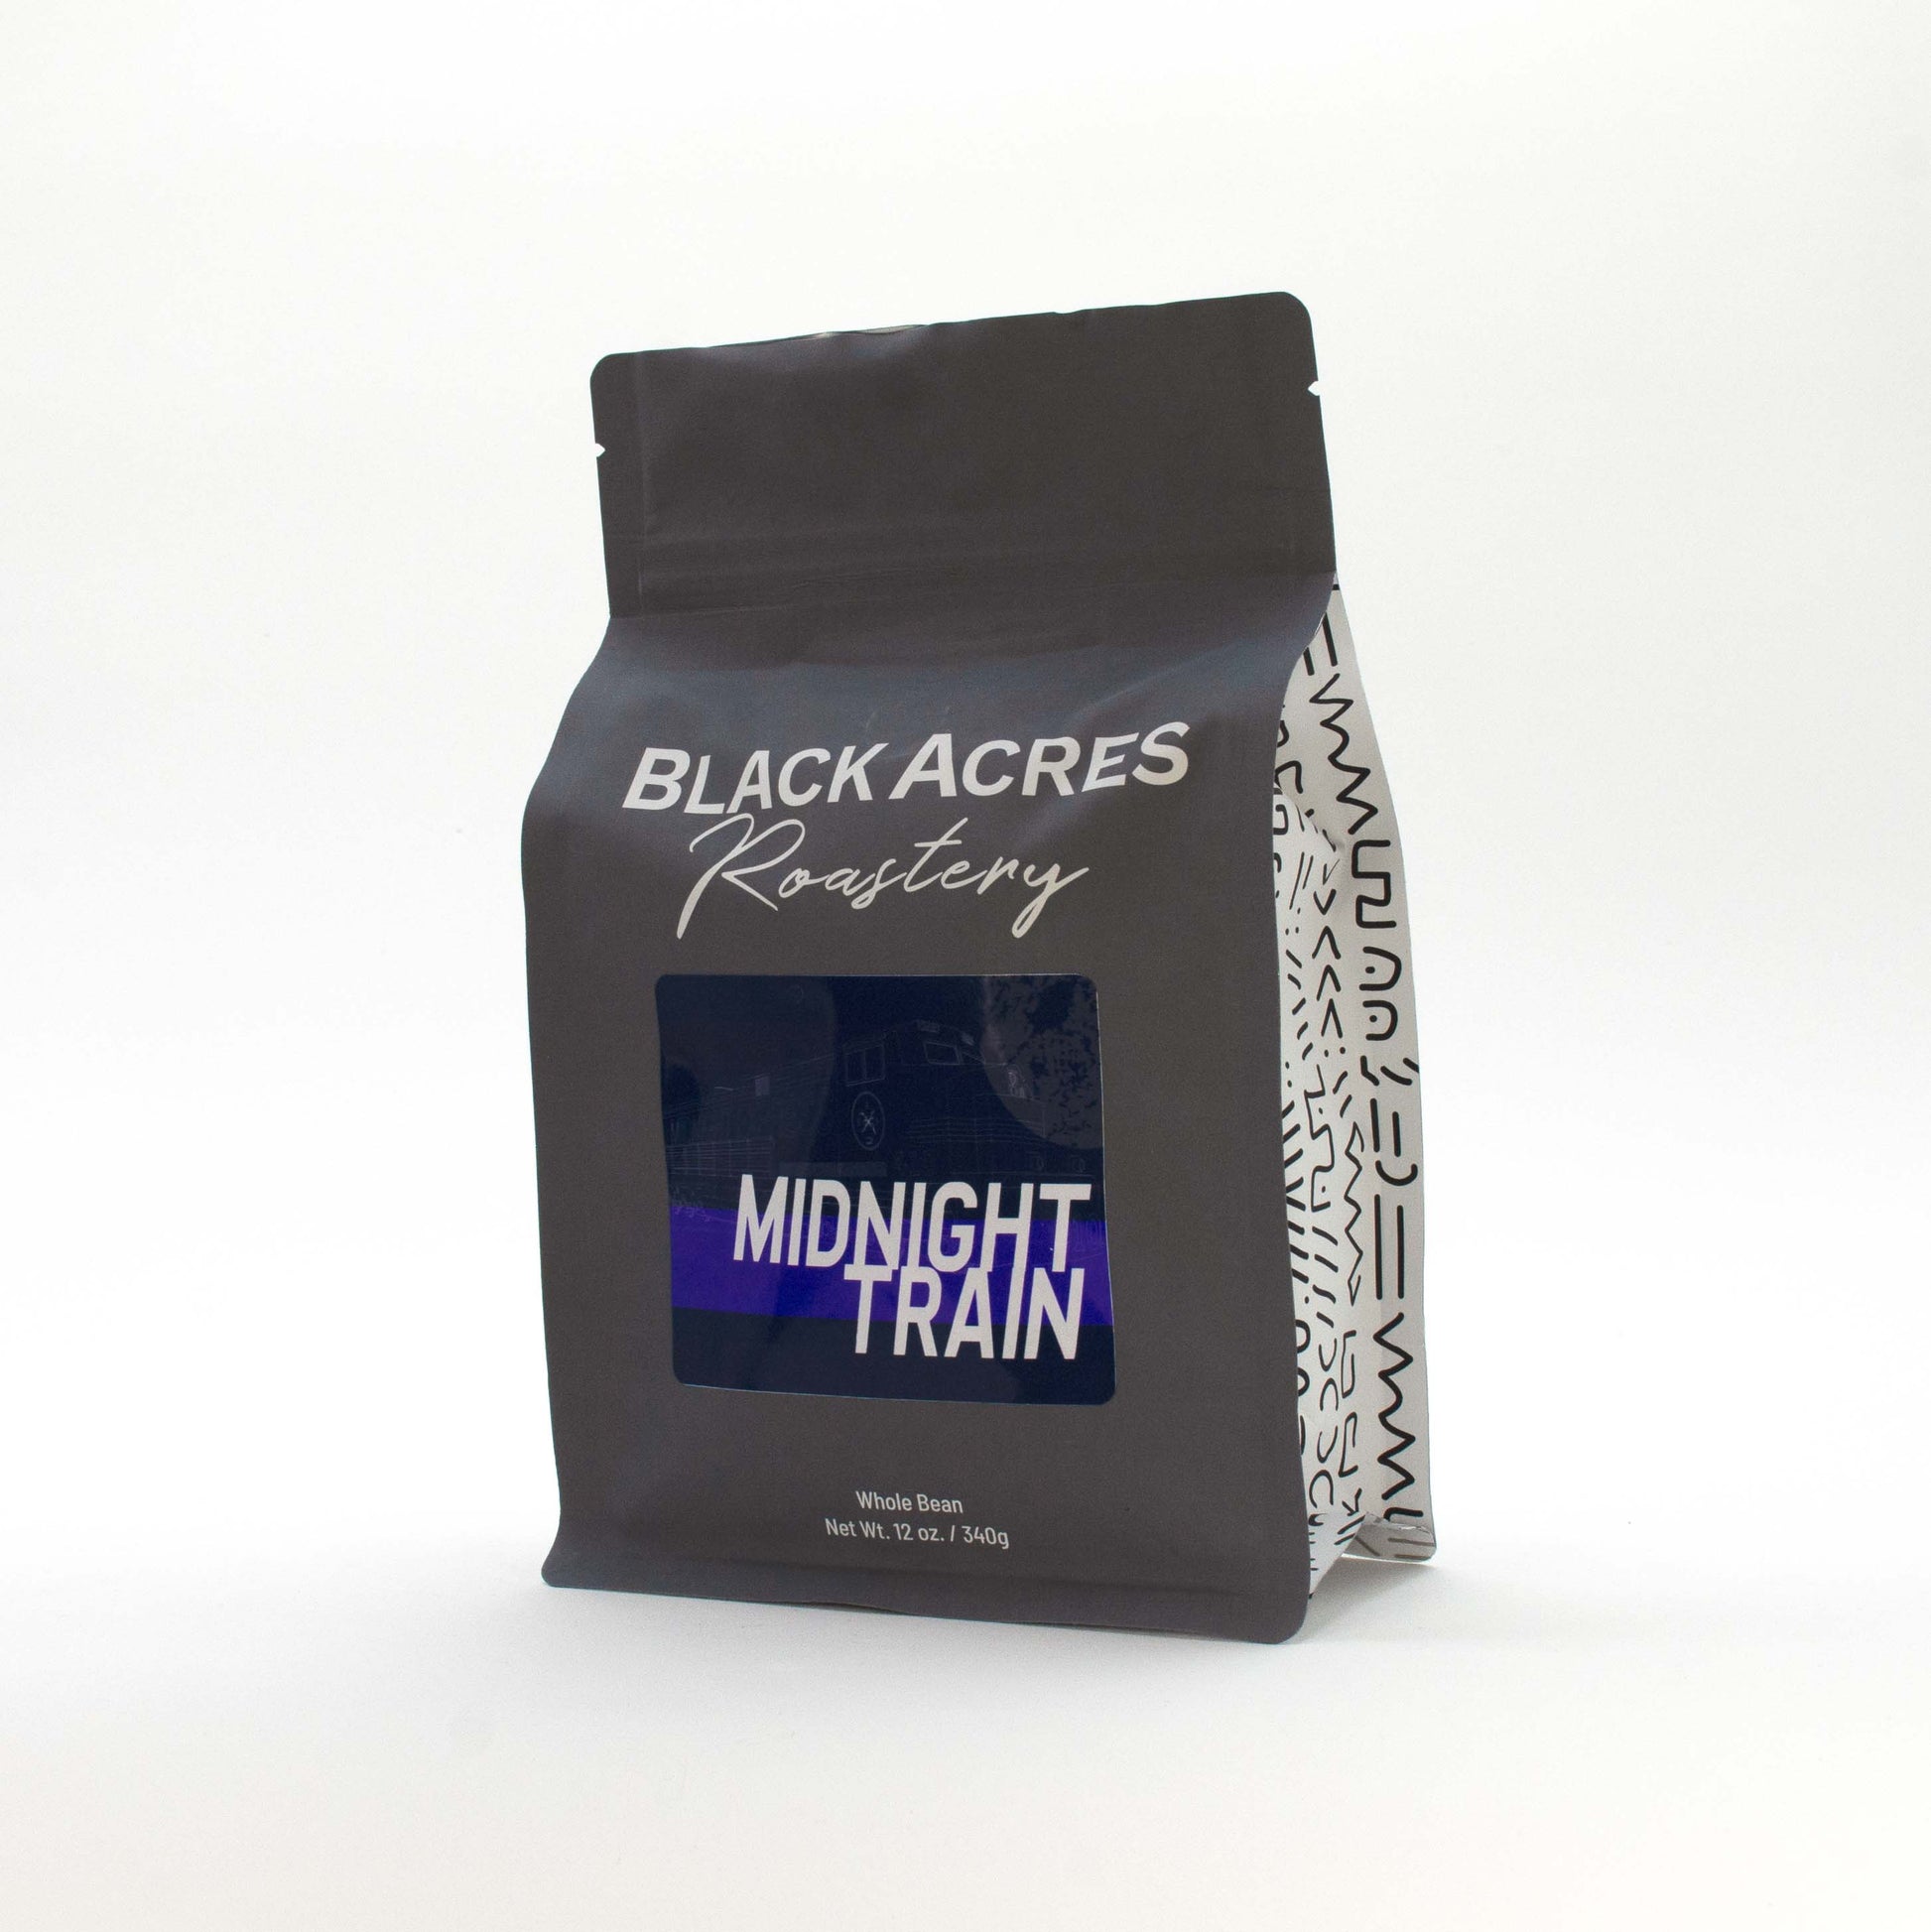 https://www.blackacrescoffee.com/cdn/shop/products/BAR_MidnightTrain.jpg?v=1640184947&width=1946